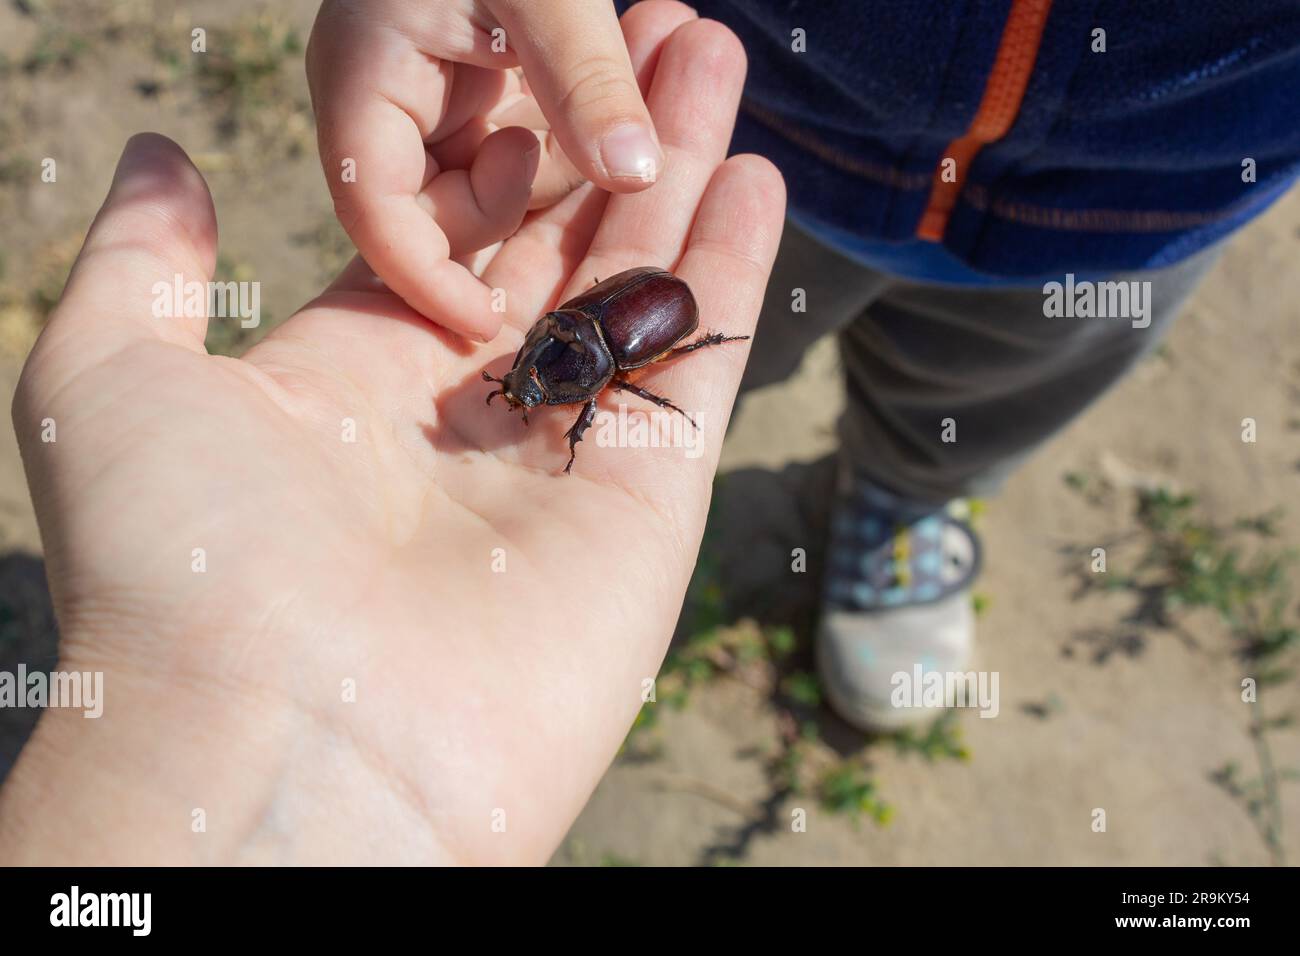 Interazione tra un adulto e un bambino nello studio dell'ambiente. Genitore e figlio esaminano lo scarabeo. Foto Stock